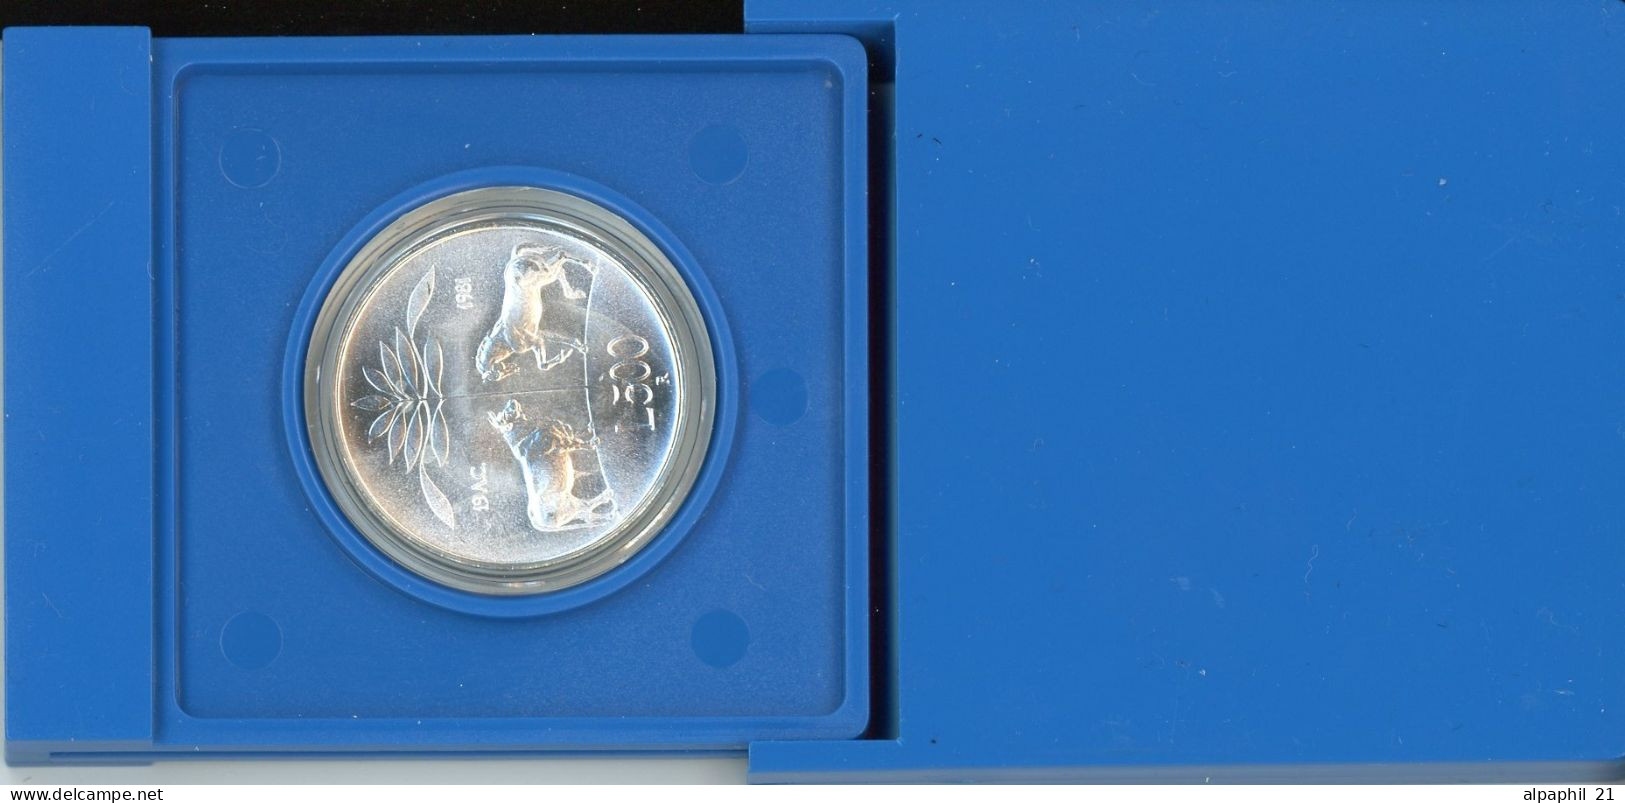 1981 Italy 500L Silver Coin PUBLIO VIRGILIO Marone UNC/BU In Official Closed BOX - Commemorative